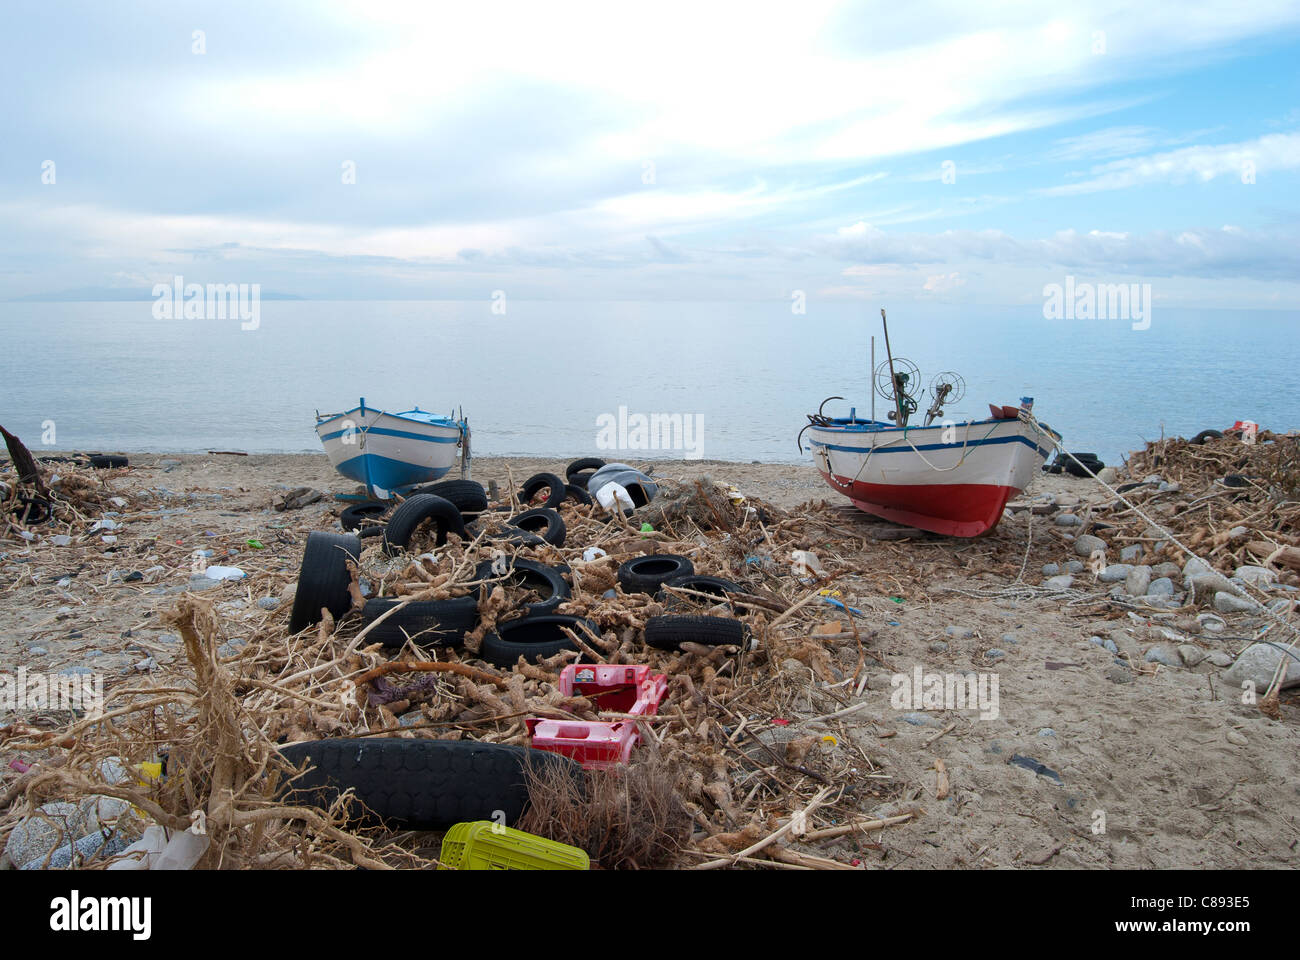 Verschmutzung der Umwelt. A oh Strand Kalabrien mit Abfall und umweltbelastenden Materialien Stockfoto